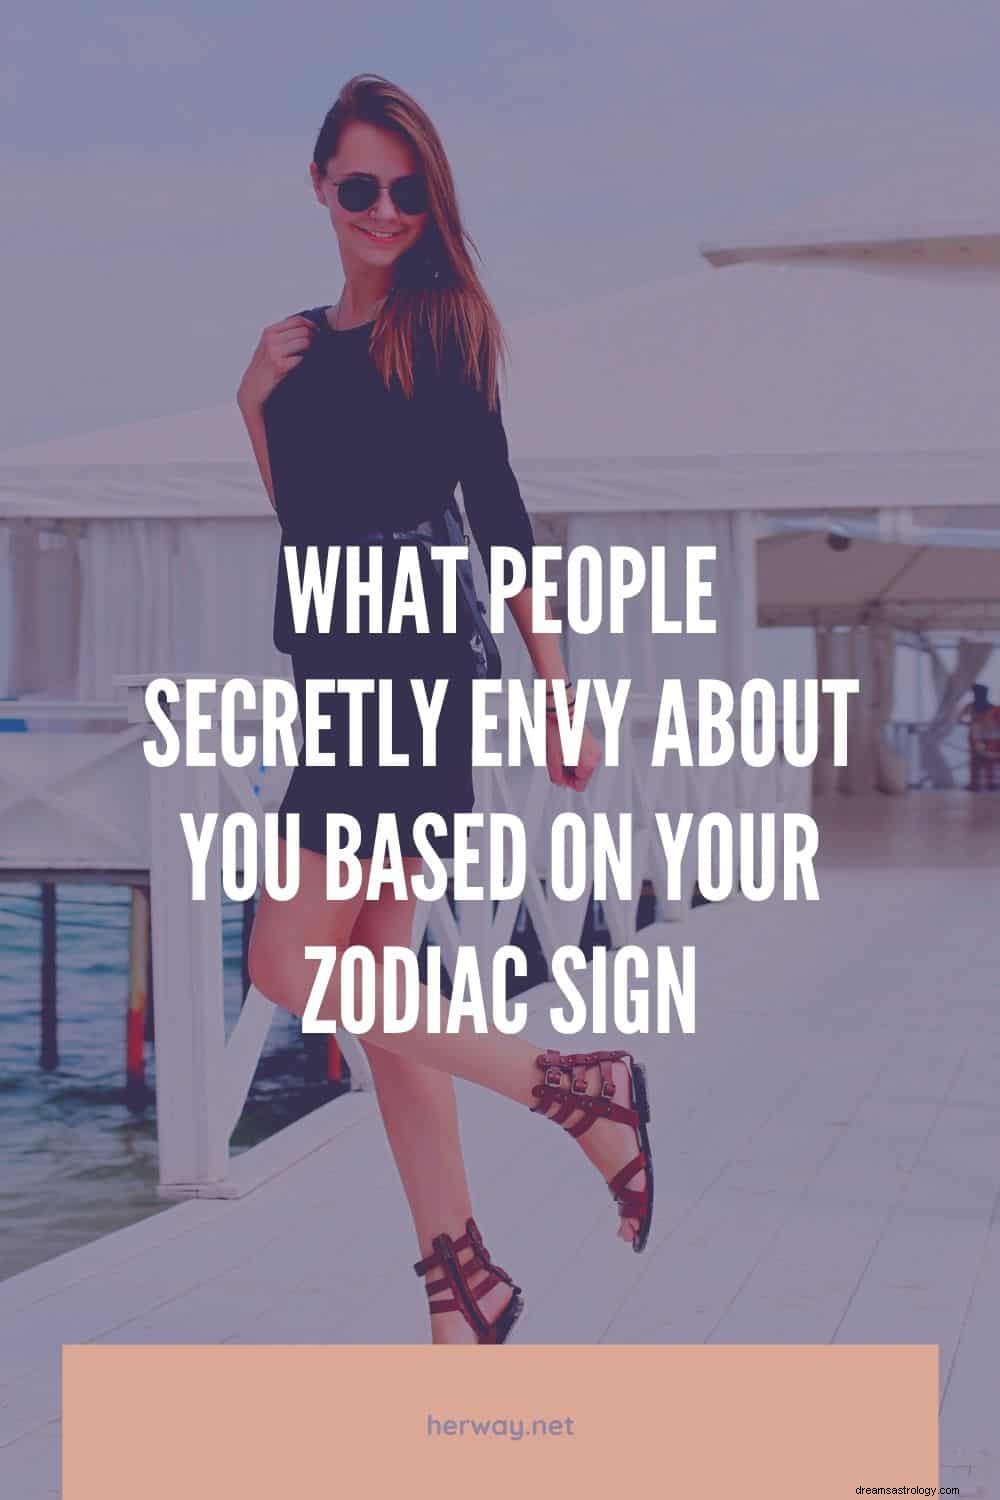 Lo que la gente envidia de ti en secreto según tu signo zodiacal